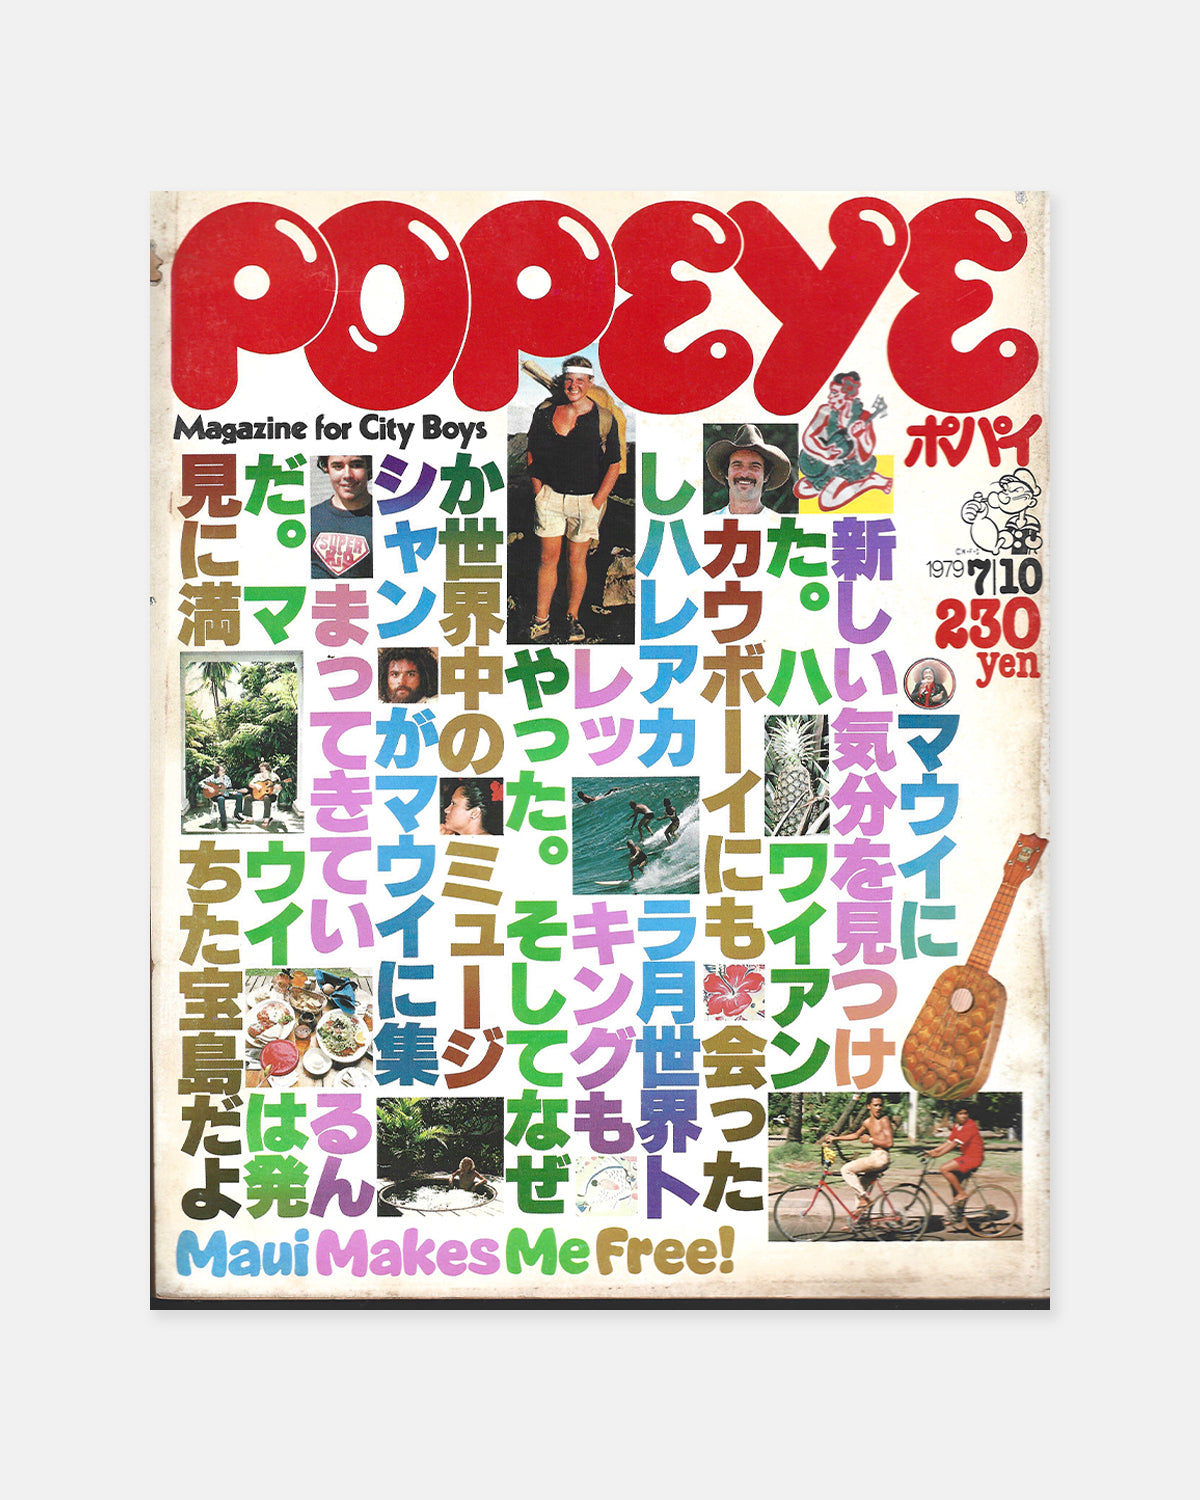 Popeye Magazine July 1979 (#58)